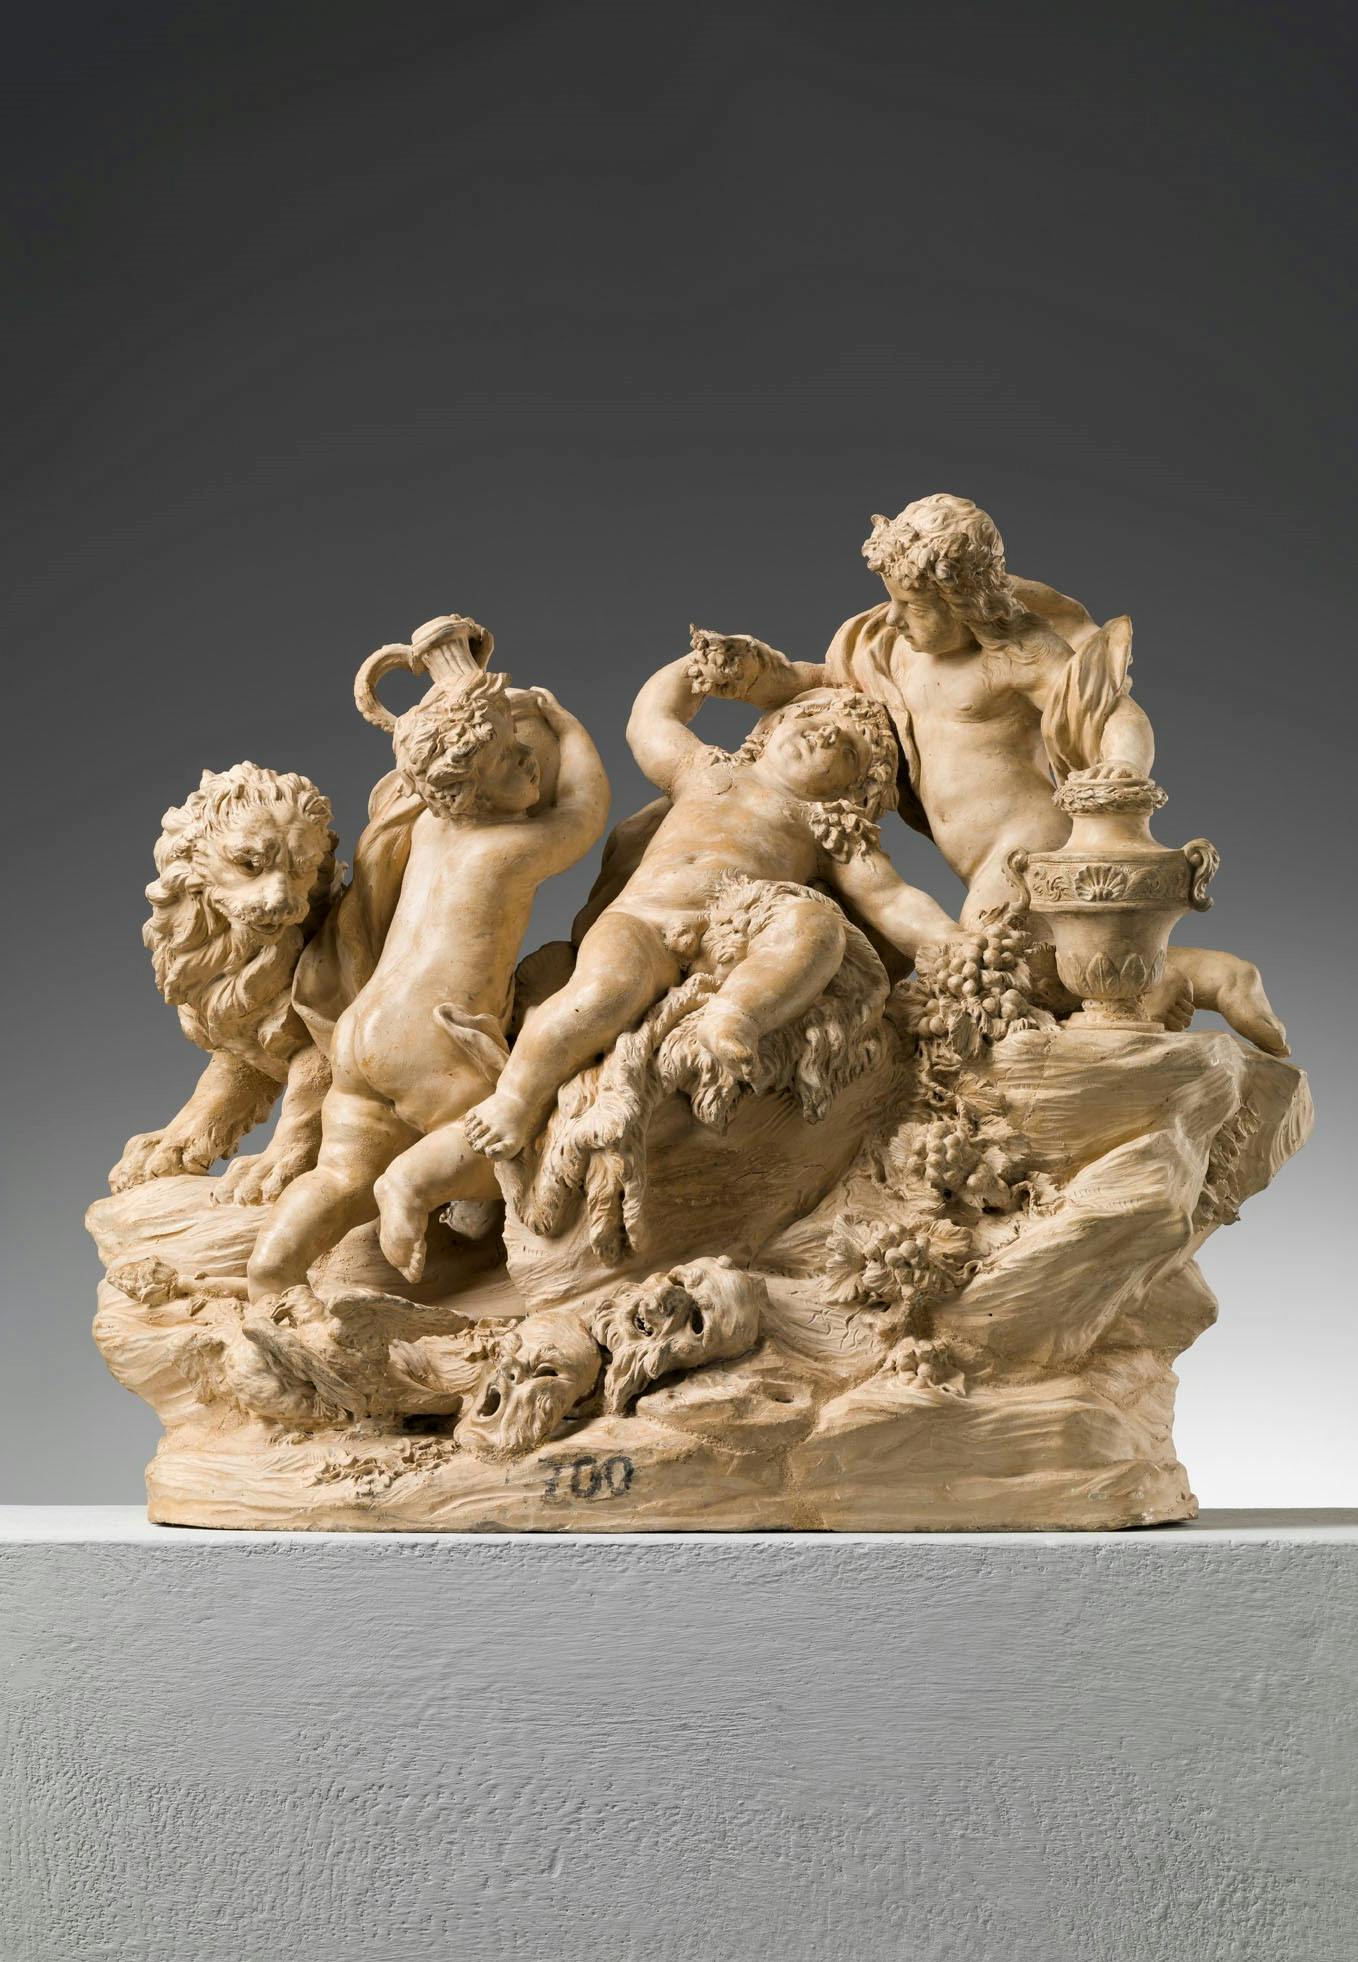 Gruppo in terracotta con tre figure di putto, un leone e dei recipienti